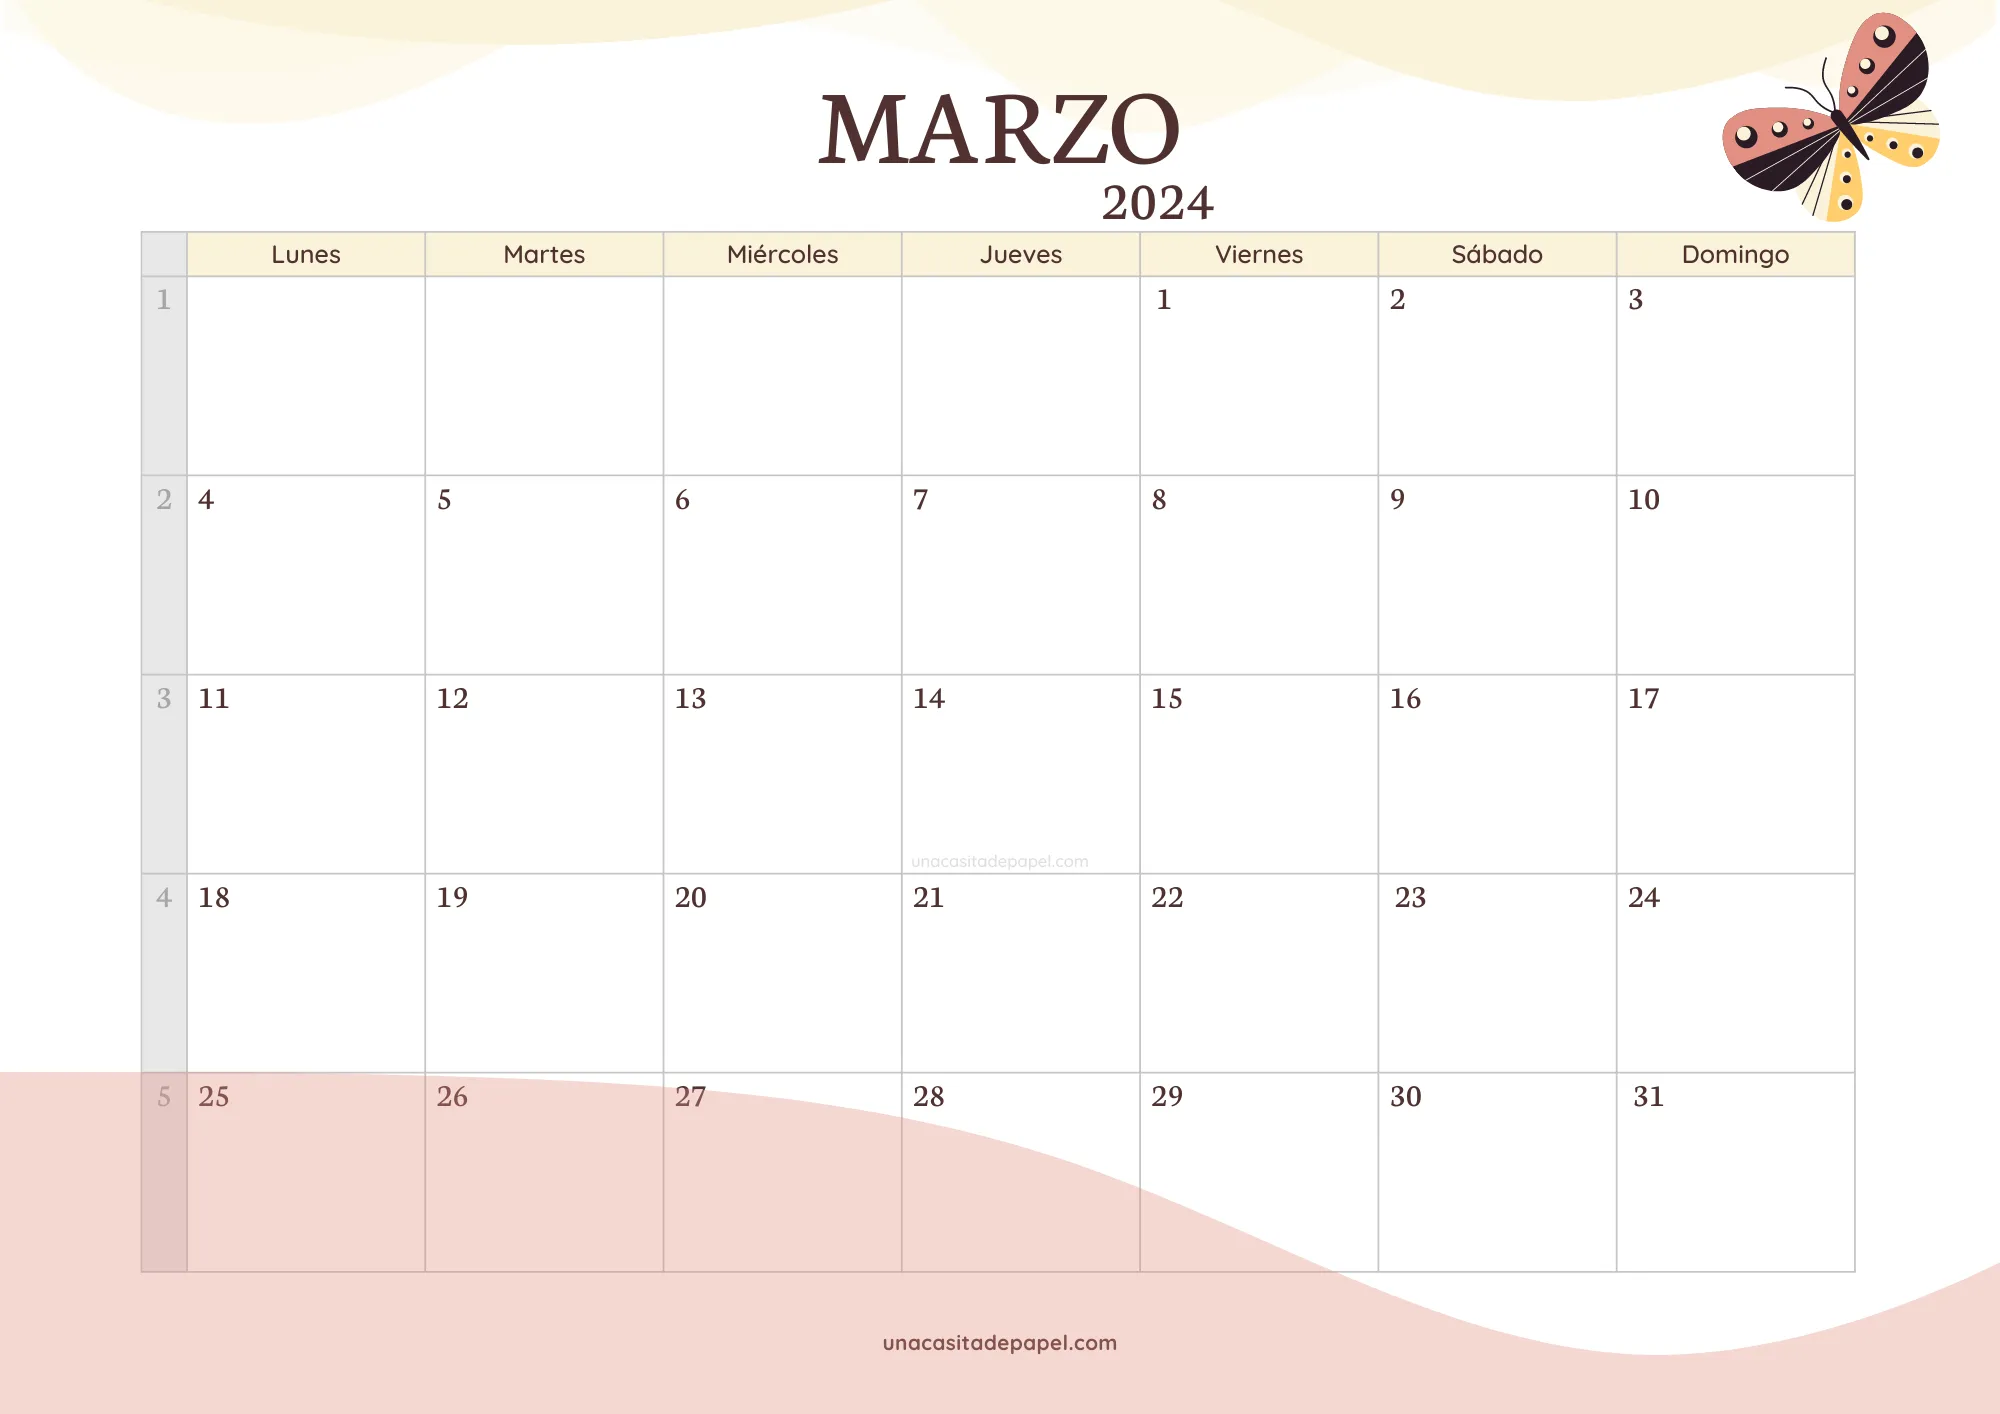 Calendario Marzo 2024 version original